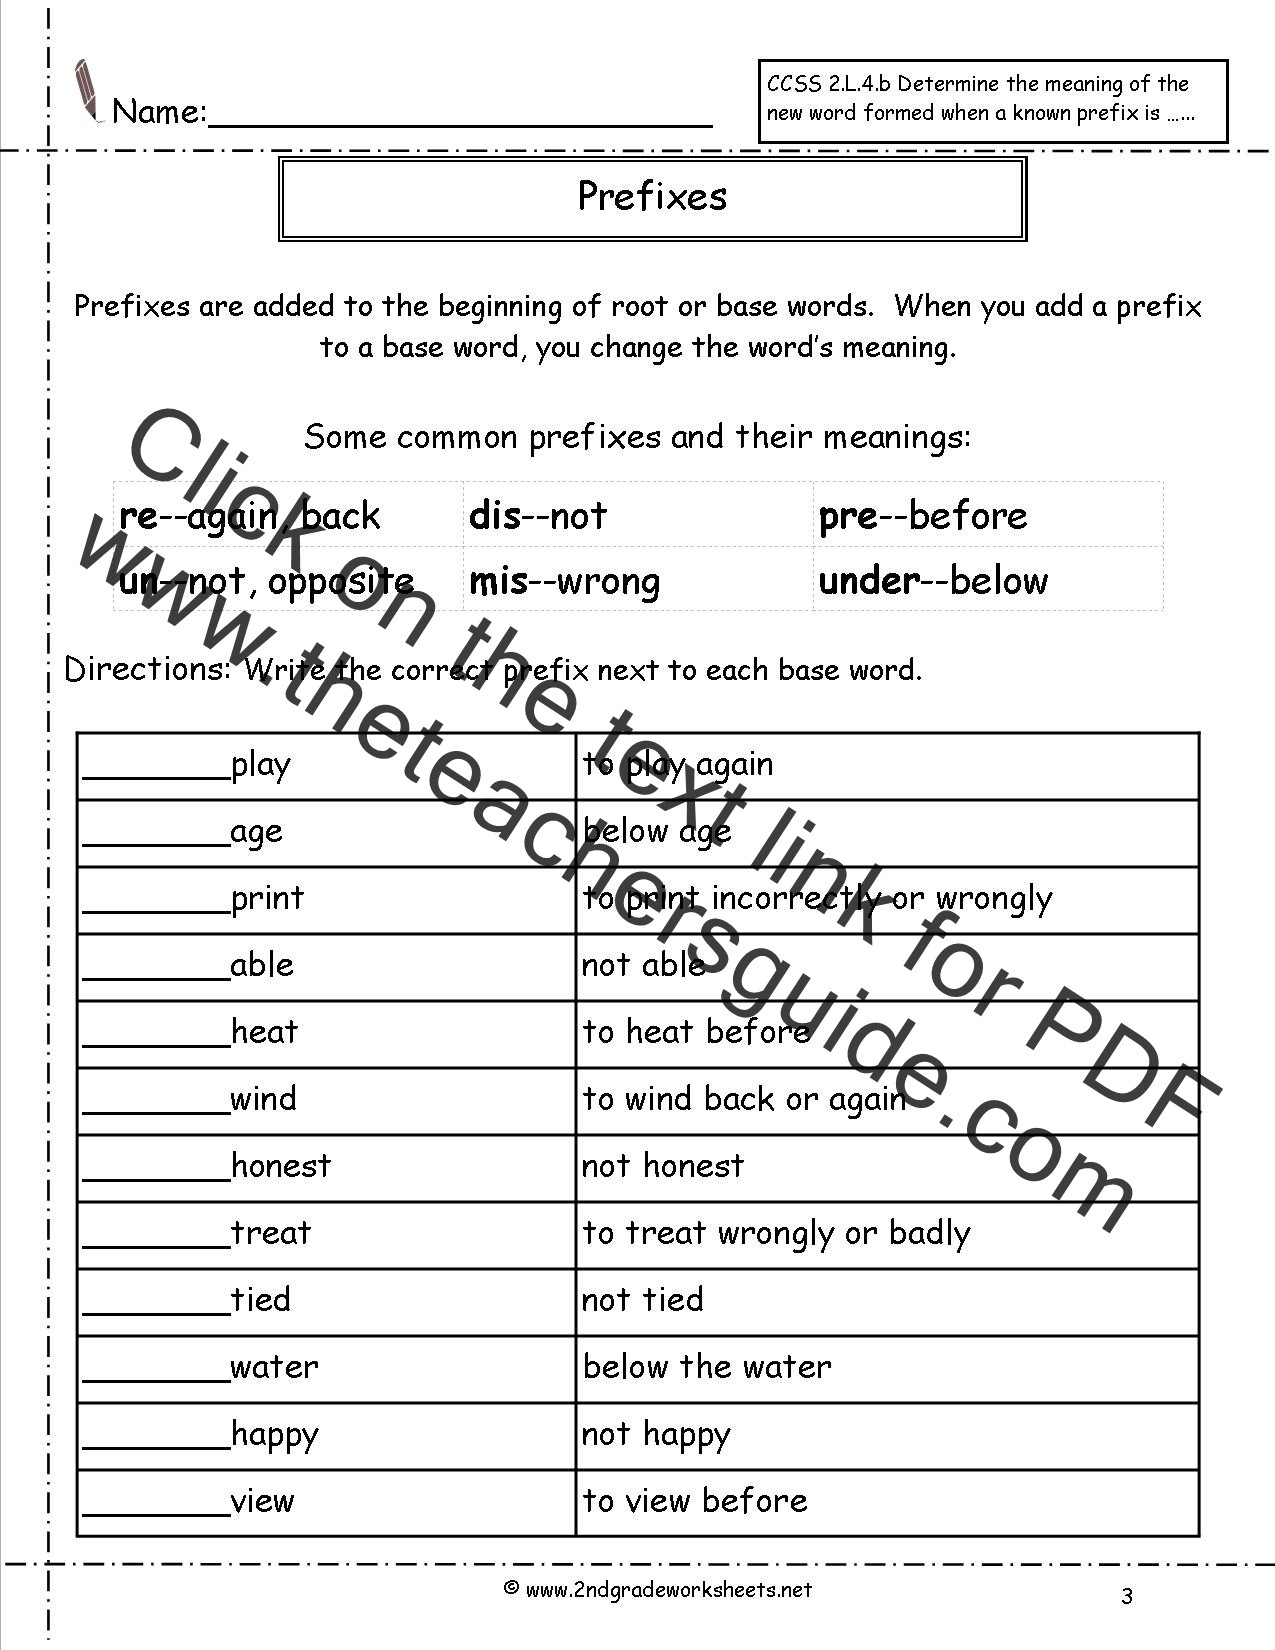 Prefixes and Suffixes Worksheet Second Grade Prefixes Worksheets